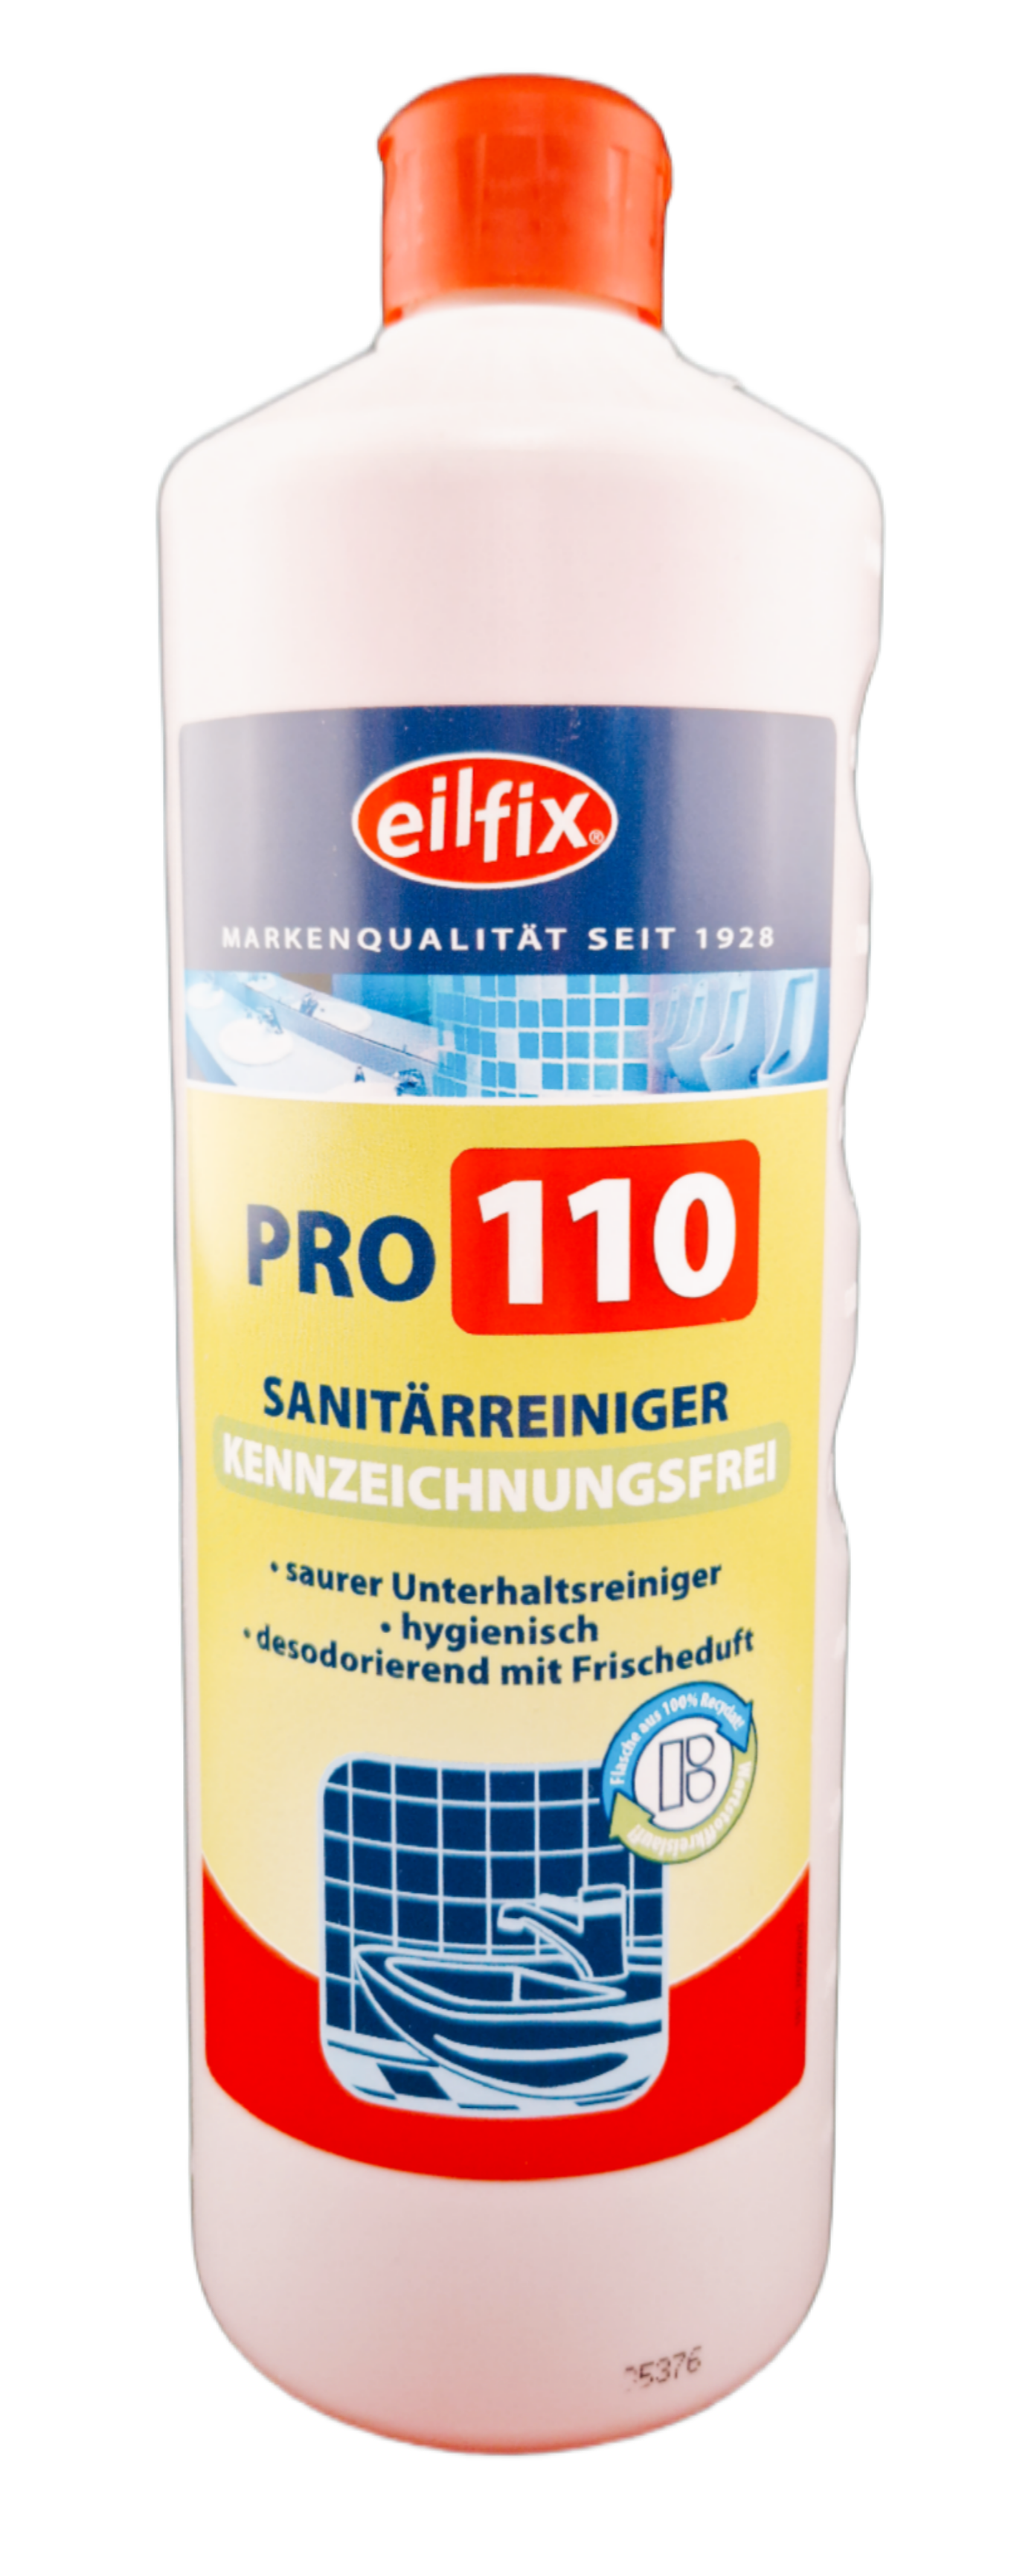 Eilfix - Pro 110 ökologischer Sanitärreiniger green 1 Liter